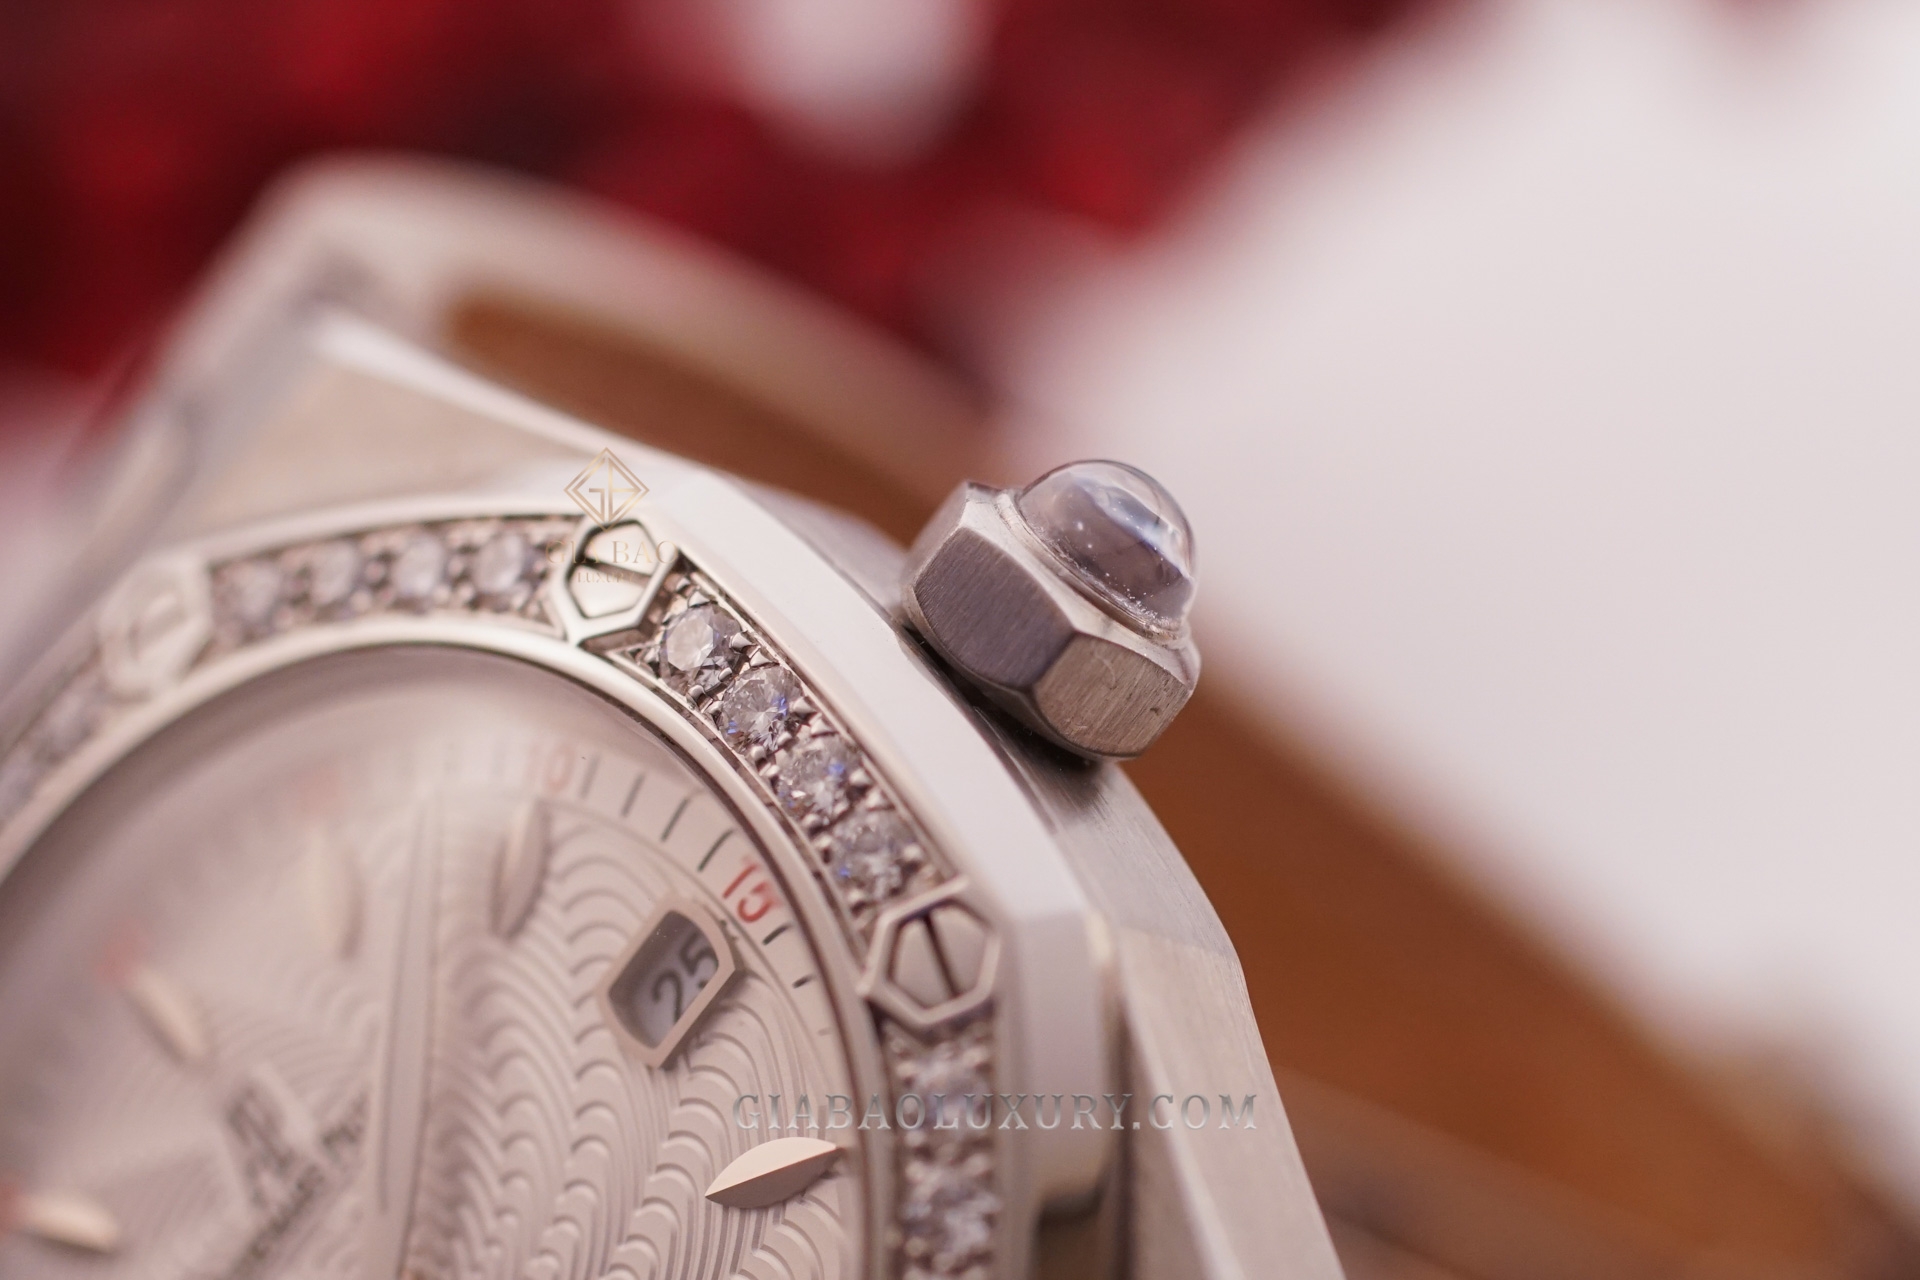 đồng hồ Audemars Piguet Royal Oak Lady “Alinghi” Ref. 67611ST.ZZ.D012CR.01